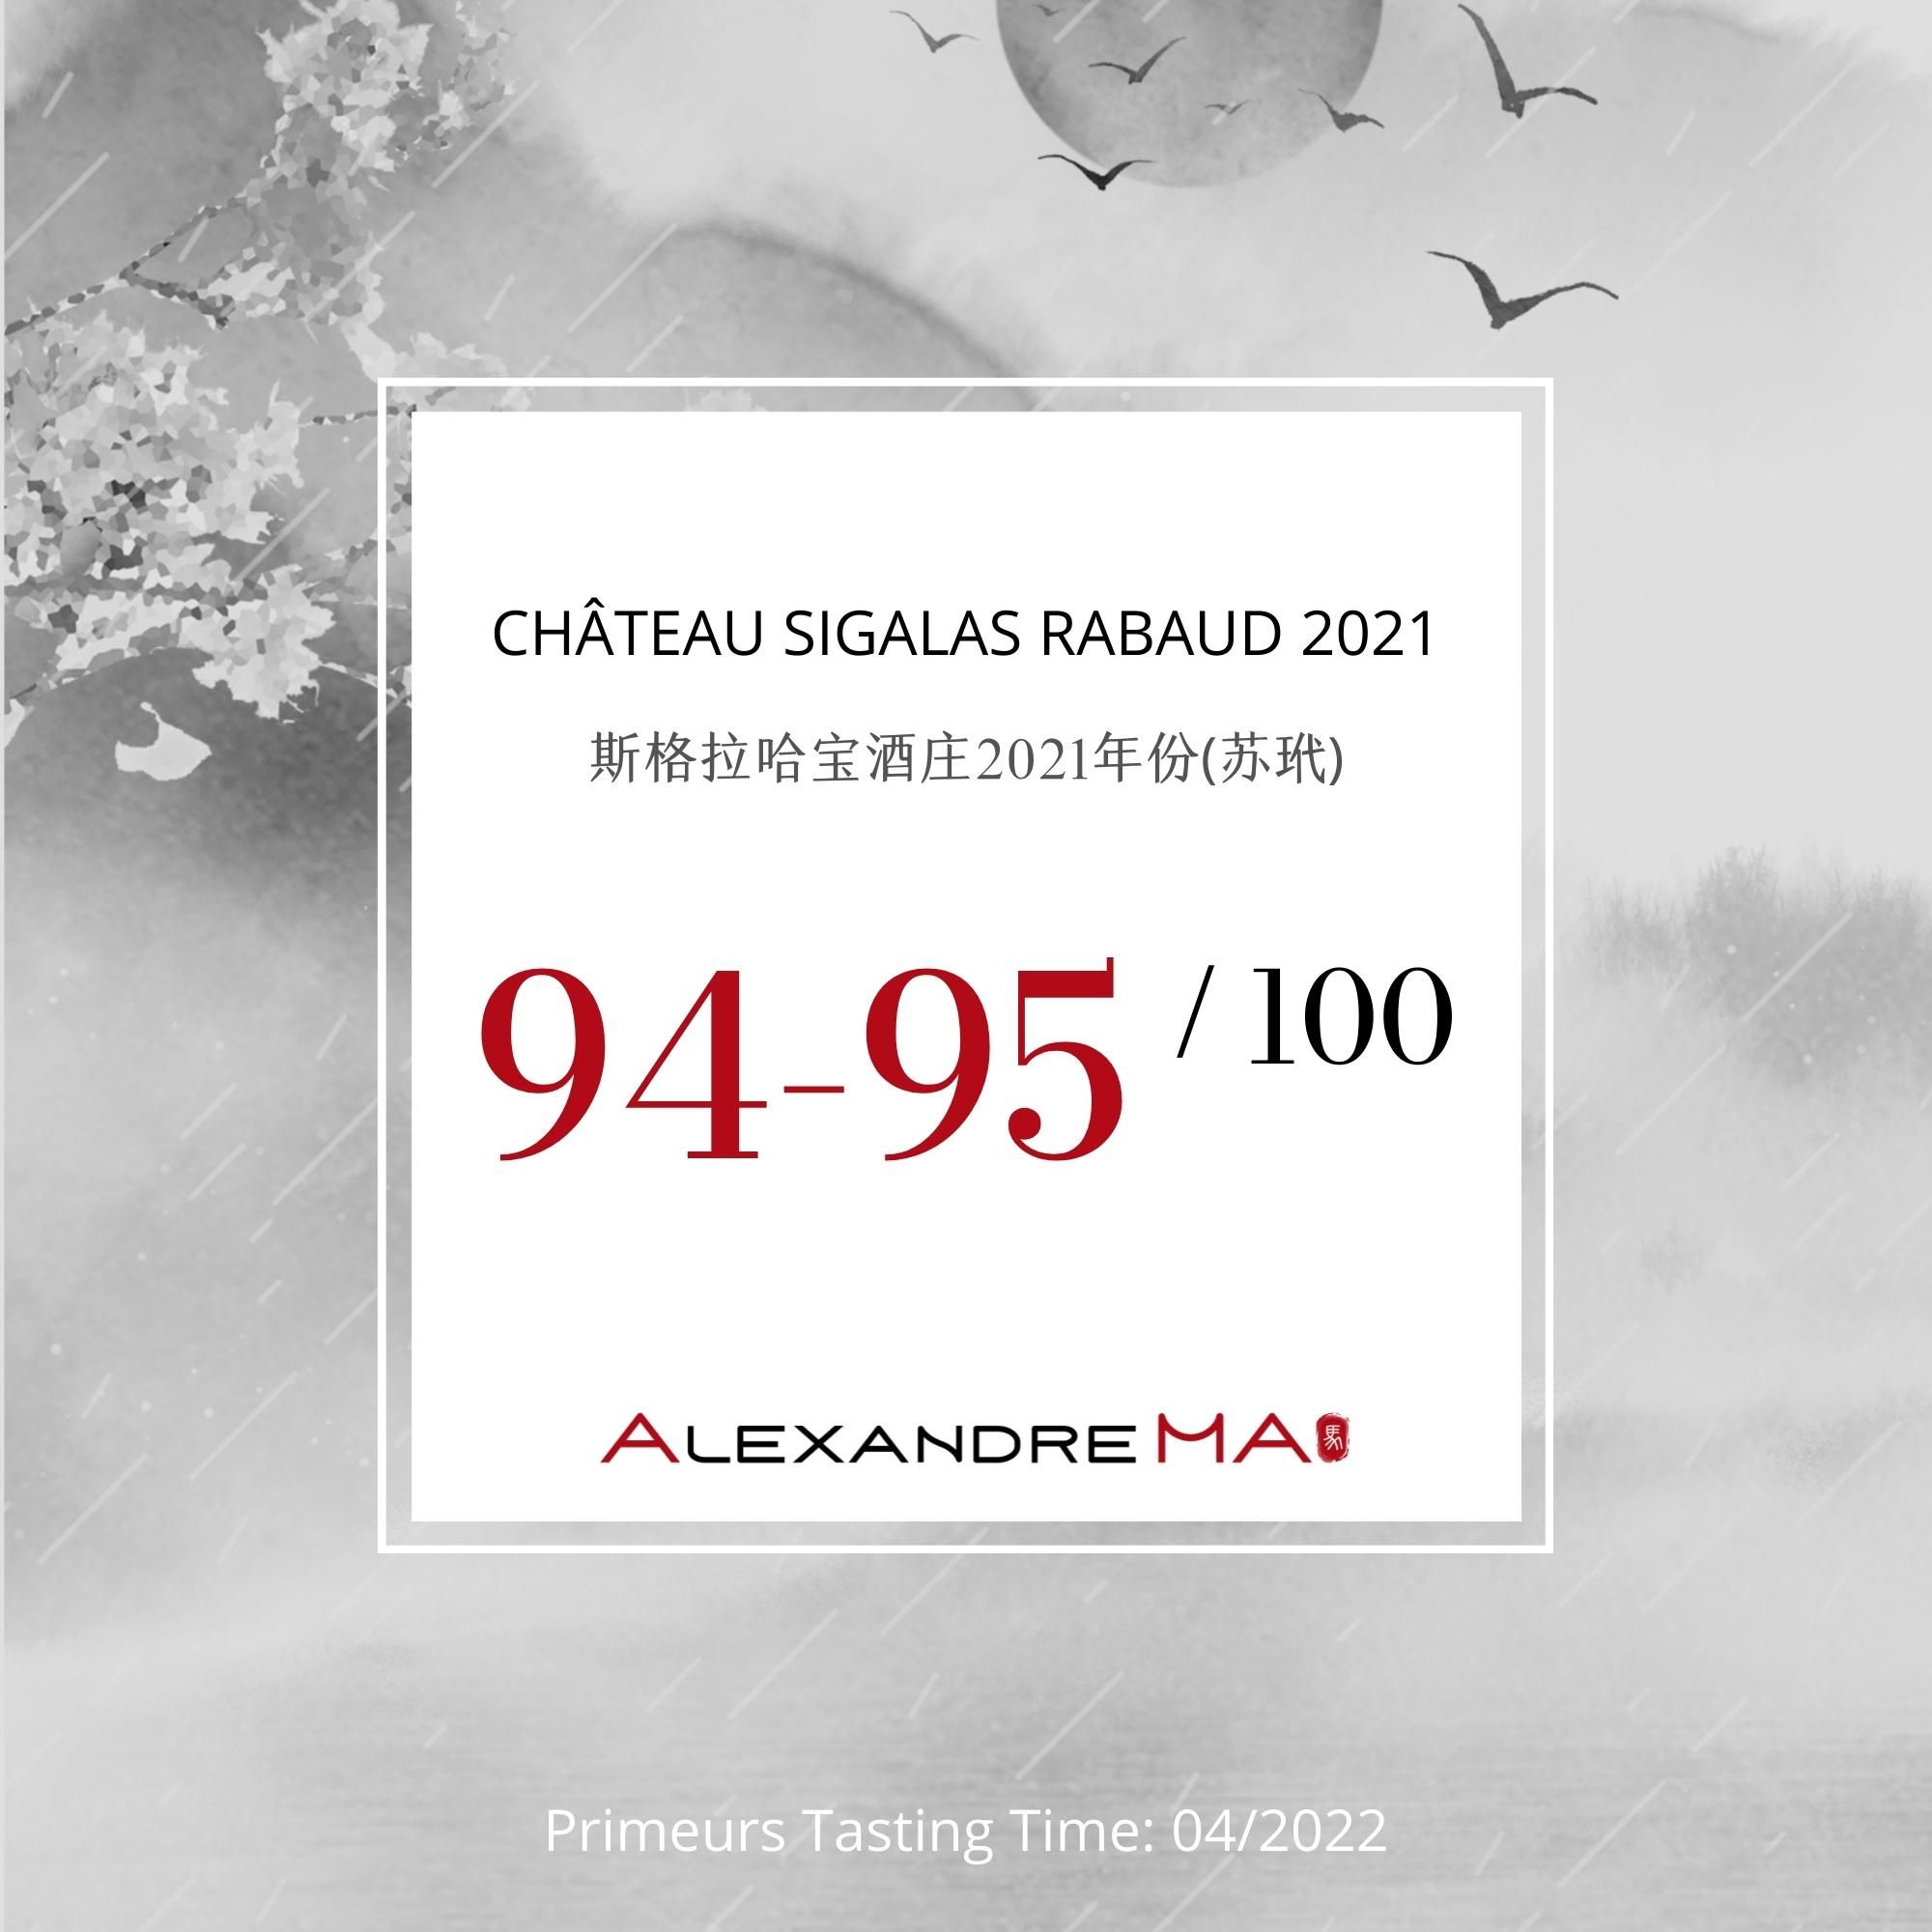 Château Sigalas Rabaud 2021 - Alexandre MA